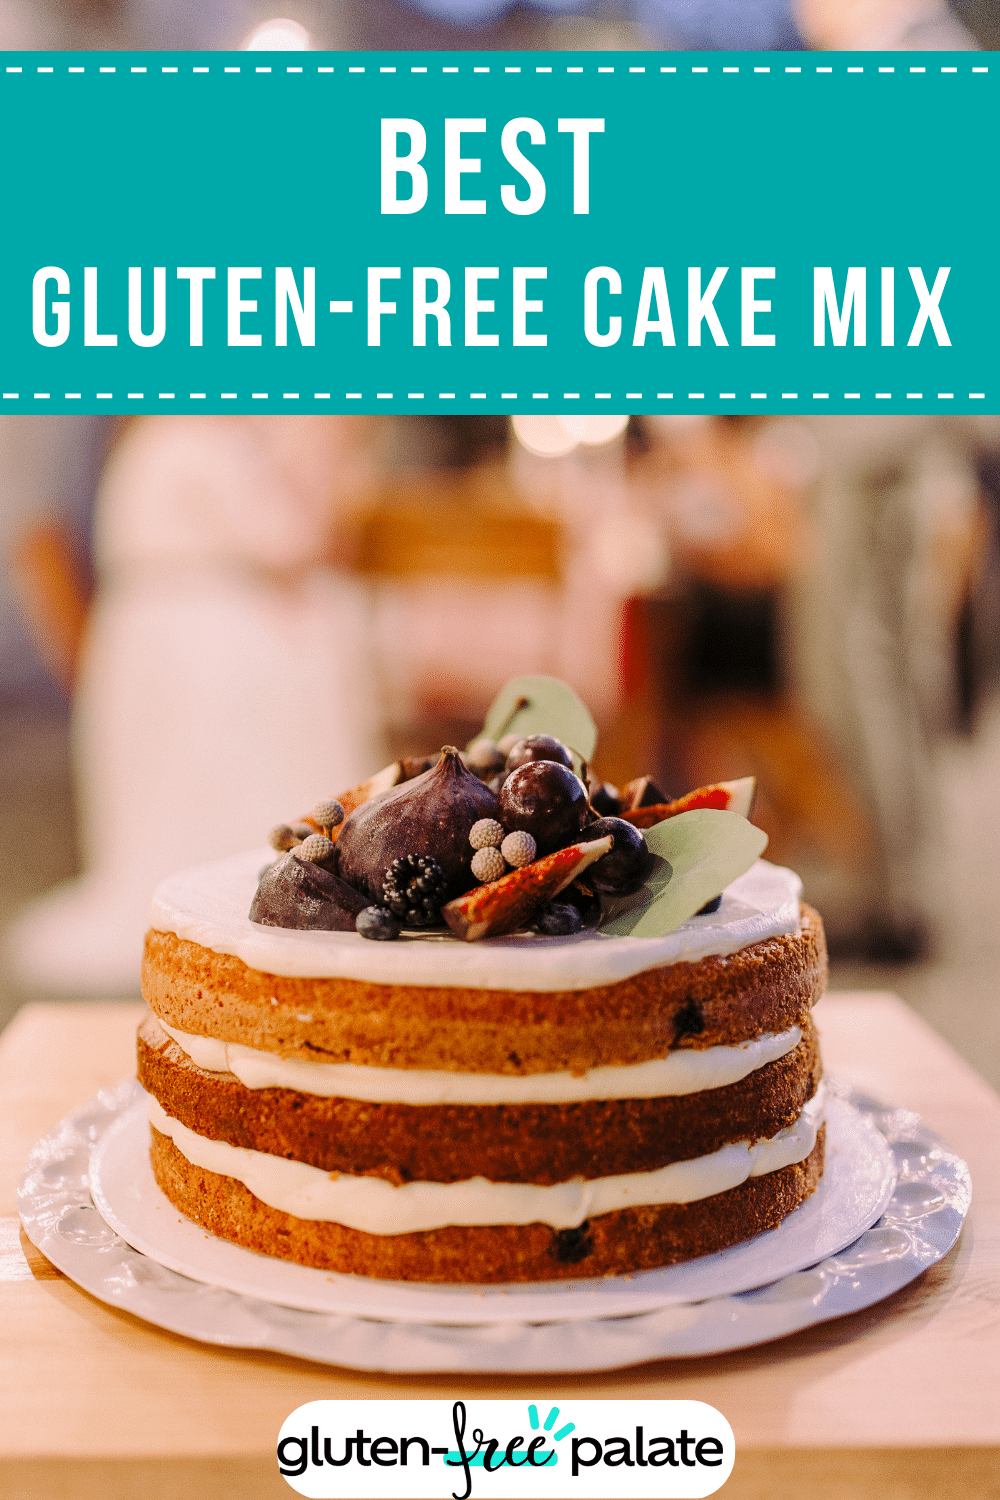 Best gluten-free cake mix.